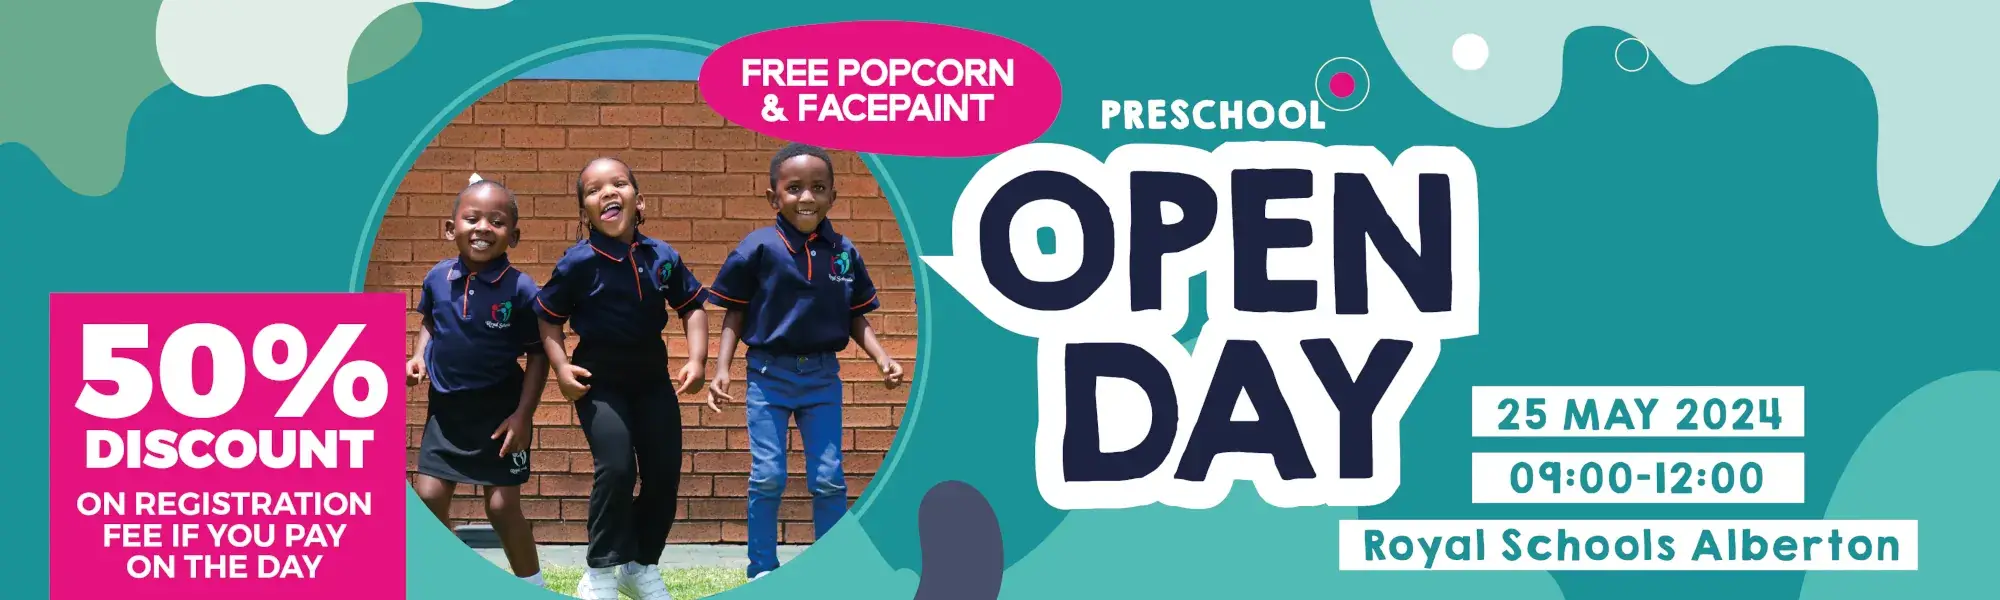 alberton private preschools openday